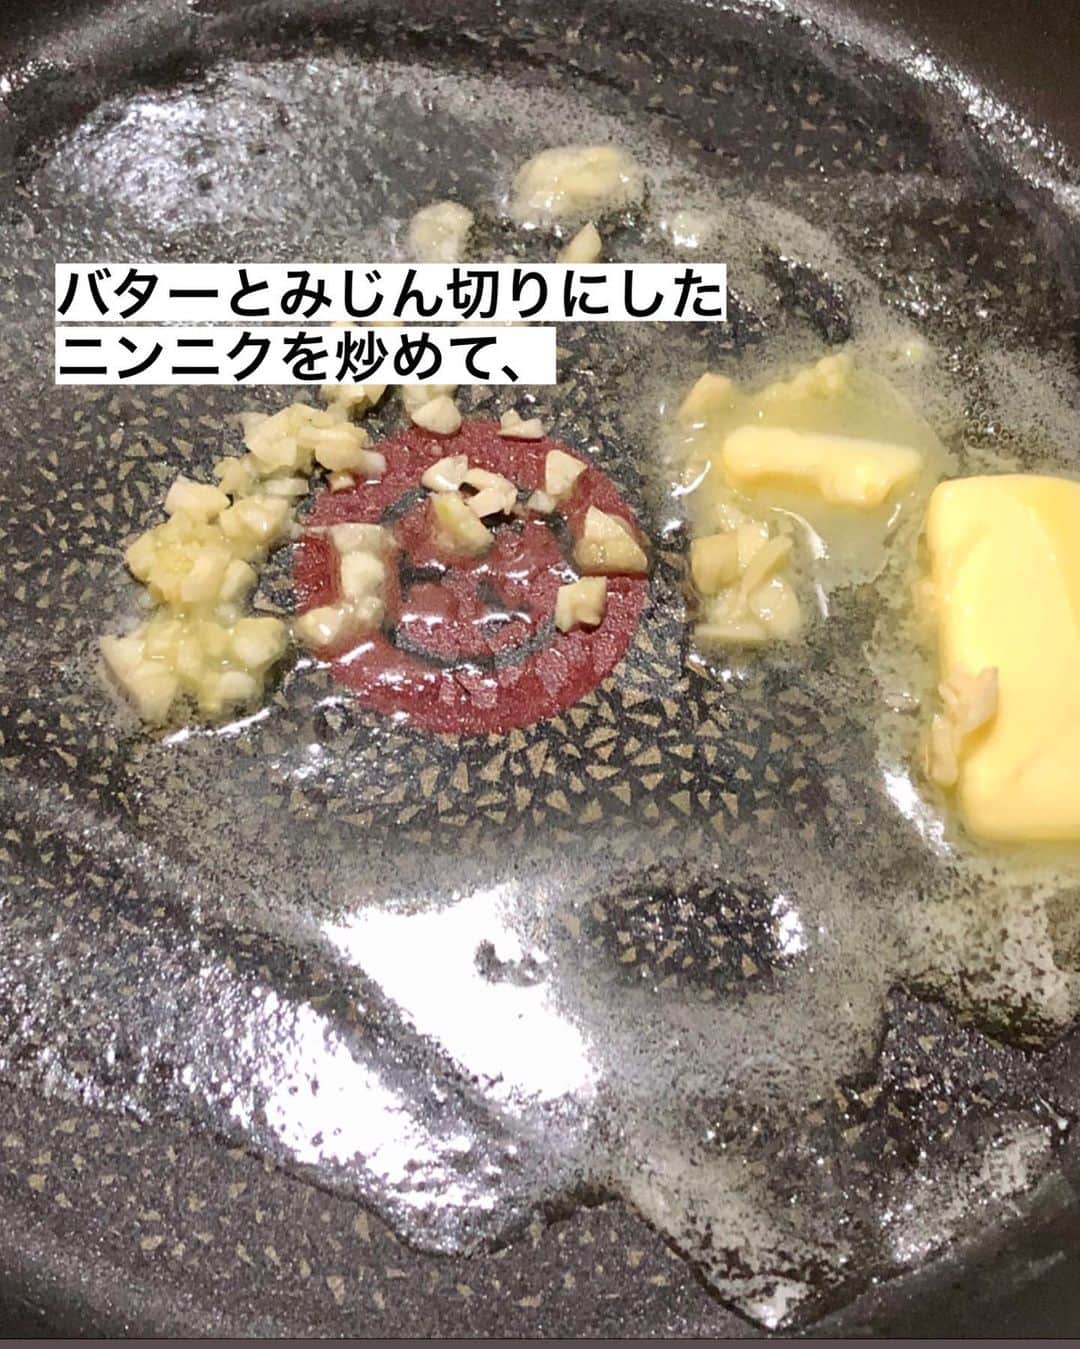 utoshさんのインスタグラム写真 - (utoshInstagram)「【レシピ画像付き】ガリバタウインナーさつまいも炒め！﻿ ーーーーーーーー﻿ バター風味がさつまいもにぴったり、ガリバタ炒め！﻿ ーーーーーー✂︎ー﻿ ﻿ こんにちは🙋🏻﻿ ﻿ 秋に食べたいサツマイモとキノコの料理。シンプルに秋の料理です。﻿ ﻿ ちょっとこの料理を作る前にひとつさつまいもの説明。﻿ さつまいもは甘さがある食材で、その甘さがじゃがいもとの違いと言うかなんですが、﻿ 価格によって「甘い、甘くない」があるんですよね。﻿ ﻿ さつまいもってスーパーに行くと、2〜3種類売っていたりしませんか？﻿ これは本当に意味があって、やっぱり100円違うと甘さが全然違う。﻿ ﻿ この甘さの違いは如実に料理のおいしさに反映されるので、﻿ 甘さが足りないと思った時は砂糖をちょっと入れて下さい。﻿ ﻿ 僕としては、砂糖を入れる必要は無いと思いますが、﻿ やっぱりサツマイモ料理は甘いと美味しい。﻿ 甘くないサツマイモ料理は少し物足りない。﻿ いいサツマイモを使うか、ちょっと砂糖を入れるか、﻿ どっちかでいいと思うので、ぜひ作る時に意識してみて下さい。﻿ ﻿ ﻿ ー✂︎ー﻿ ﻿ 味付けはサツマイモにぴったりのバター。こちらもシンプルに。﻿ 美味しいは間違い無しです。ご飯も進みますので、ぜひ作ってみてくださいね！﻿ ﻿ ﻿ ー・ー・ー・ー・ー・ー・ー・ー﻿ ﻿ 9月11日に3冊目となる著書「在宅楽飯100」が発売されました📙﻿ 簡単に作れて栄養満天、これからの暮らしにぴったりの本になっております。﻿ 僕のプロフィールのハイライトからAmazonページに行く事ができますので﻿ ぜひご購入ください！﻿ ▶︎ @utosh﻿ ﻿ ー・ー・ー・ー・ー・ー・ー・ー﻿ ﻿ ﻿ レシピはこちら↓﻿ ＿＿＿＿＿﻿ ﻿ ガリバタウインナーさつまいも炒め（2人分）﻿ ﻿ 【材料】﻿ ウインナー 2袋﻿ さつまいも 1個（250g）﻿ しめじ 100g﻿ ﻿ バター 20g﻿ ガーリック 1片﻿ しょう油 小さじ1﻿ ﻿ （サツマイモの甘さが足りない時は）﻿ 砂糖 小さじ1﻿ ﻿ ﻿ 【作り方】﻿ （1）ウインナーは4等分、さつまいもは7mm幅に切り、太い部分はさらに半分に切る。しめじは石突きをとりばらしておく。ニンニクはみじん切り（すりおろしでもいい）にしておく。﻿ ﻿ （2）さつまいもは600Wのレンジで3分加熱する。﻿ ﻿ （3）フライパンにバターとニンニクを入れ、軽く火にかけ、ウインナーとサツマイモを入れて炒めあわせ、ある程度火が通ったらしめじをいれて、全体に火が通ったらしょう油を入れて完成。皿に盛りごまをふる。（サツマイモに甘さが足りない時は砂糖を入れる）﻿ ﻿ ＿＿＿＿＿﻿ ﻿ ぜひ作ってくださいね！﻿ No local No food おいしく楽しく！﻿ ﻿ ﻿ #さつまいも料理 #さつまいもレシピ #秋料理 #秋レシピ #きのこレシピ﻿ #スタートUPレシピ #スタートアップレシピ #ややはつレシピ #とりあえず野菜食 #やさしい飯 #在宅楽飯﻿ ﻿ #おうちごはん #レシピ #時短料理 #簡単レシピ #献立 #お家ご飯 #手料理 #今日のごはん #フーディーテーブル #japanesefoods」10月7日 23時38分 - utosh